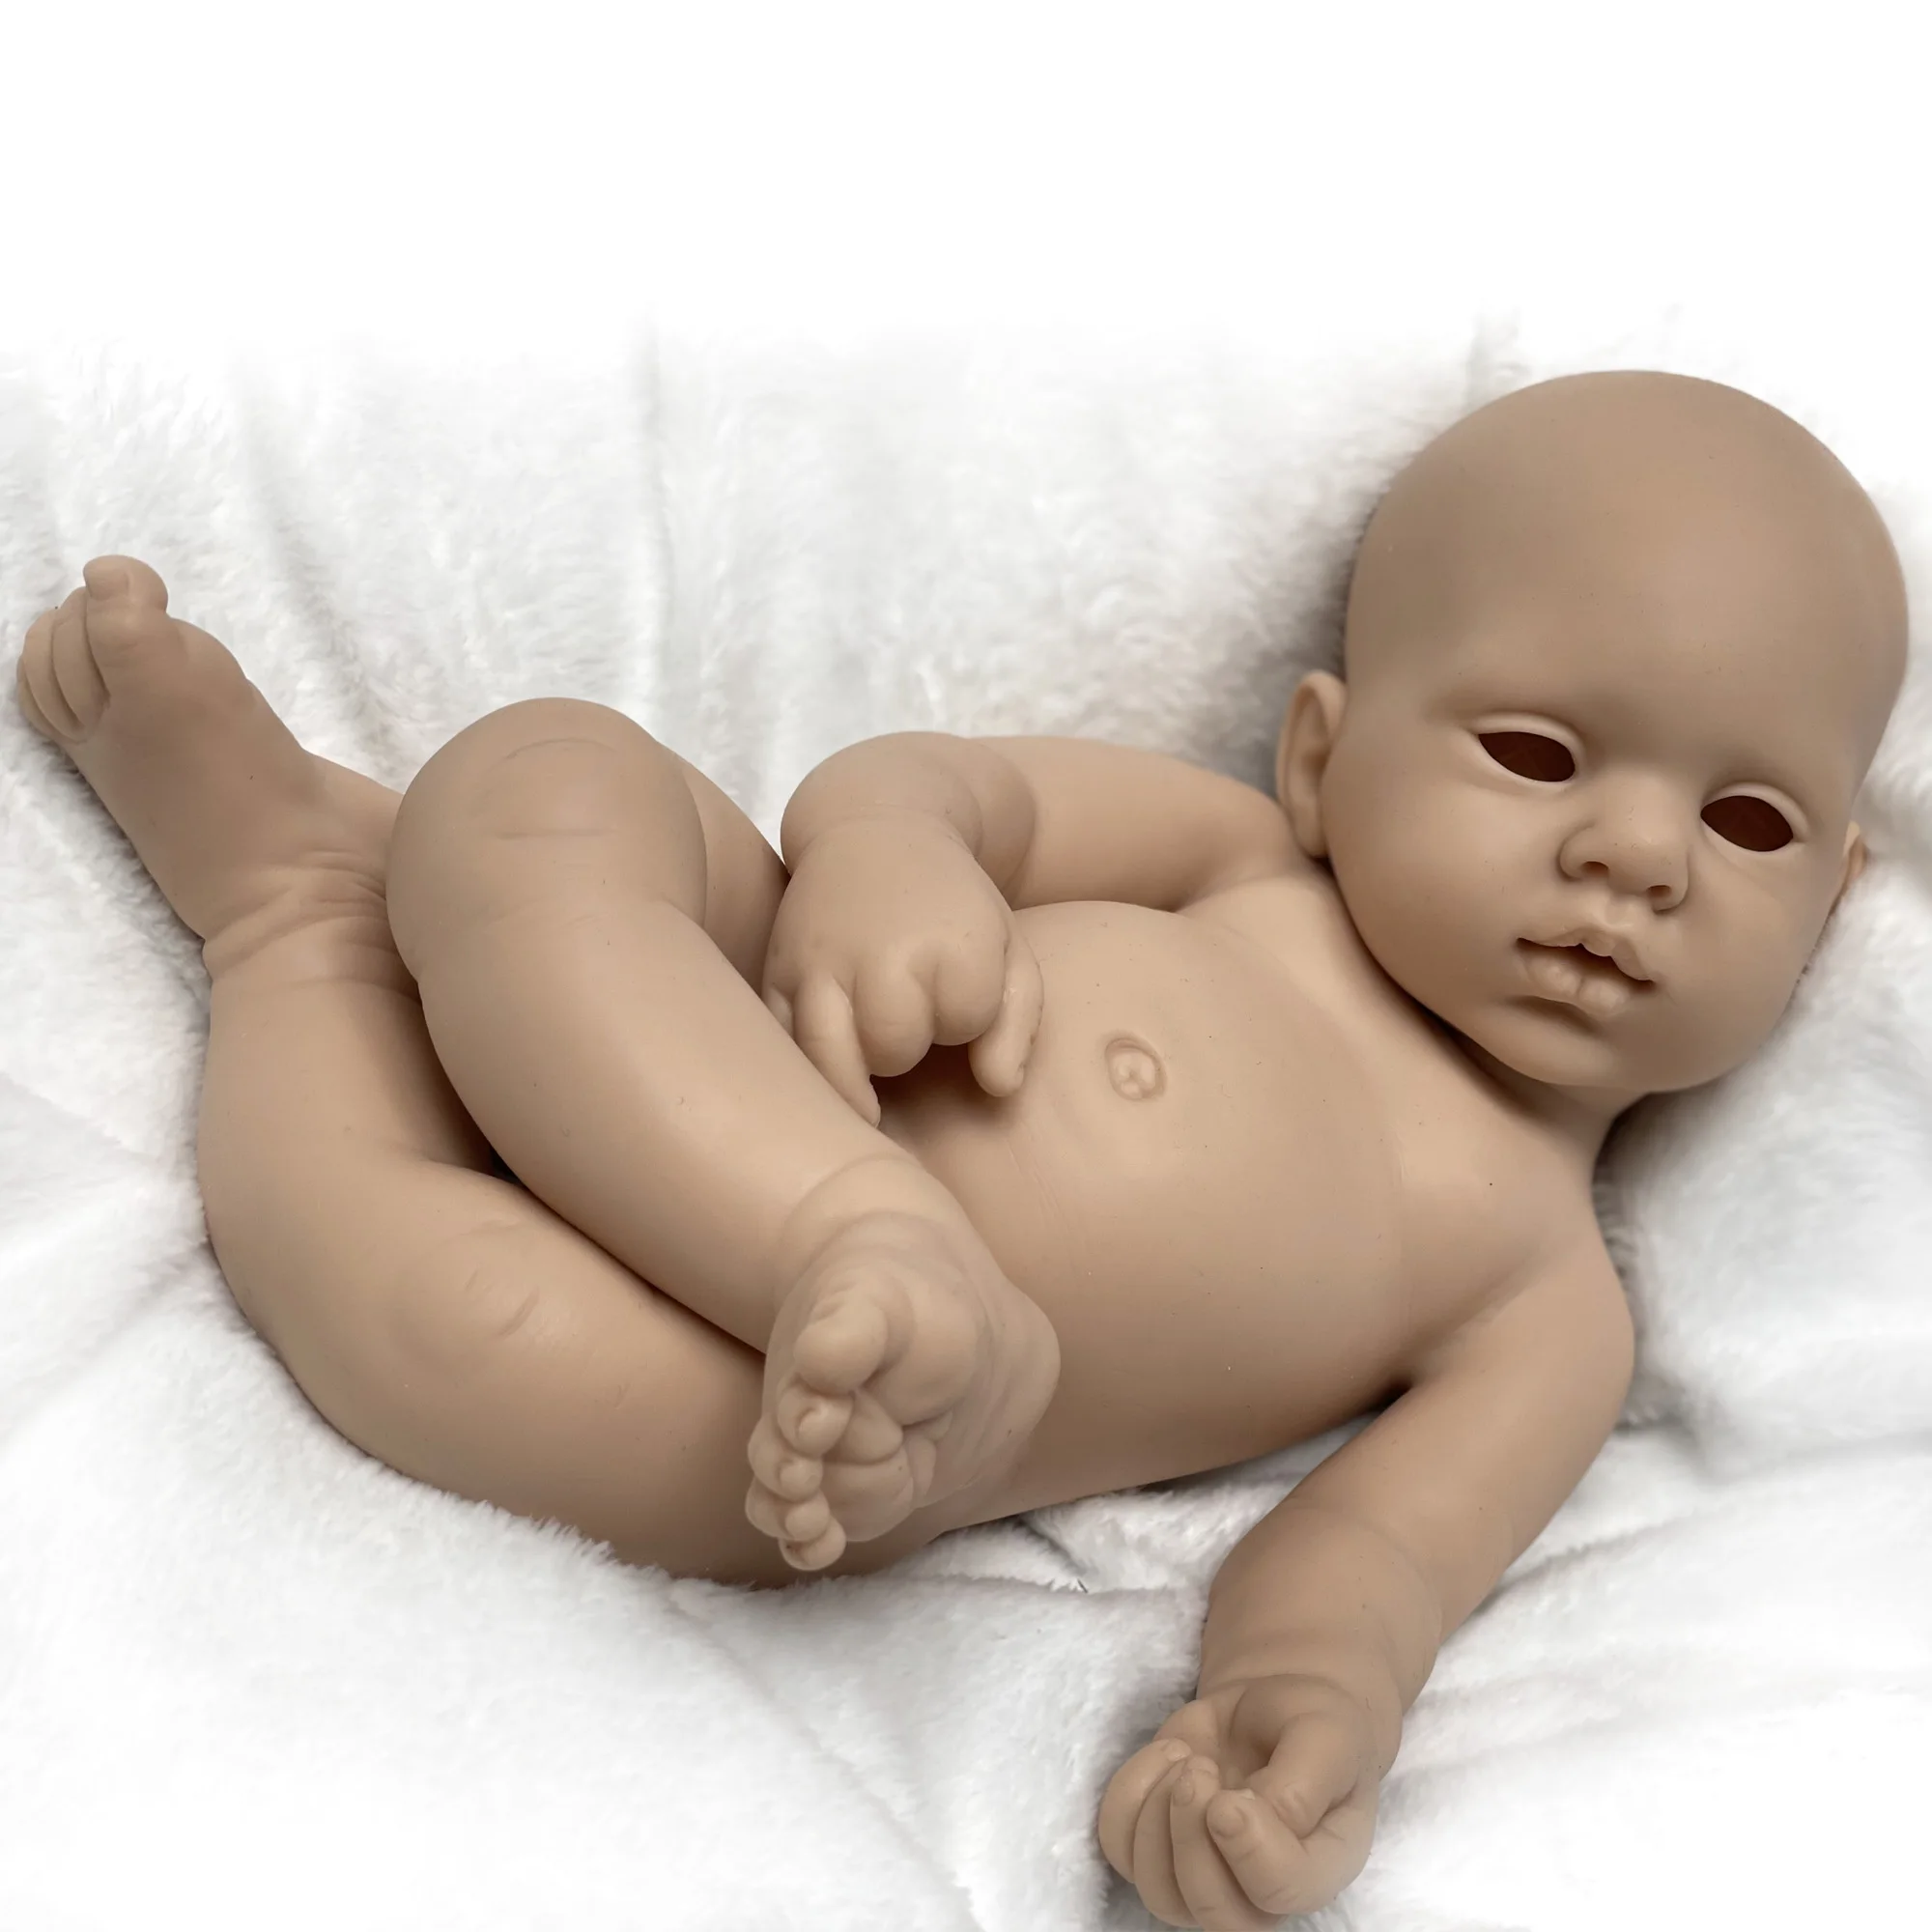 16 Inch Reborn Silicone Entier Unpainted Bebe Pеборн bébé Reborn Doll Kits  Full Body Silicone Boneca Reborn Corpo Silicone